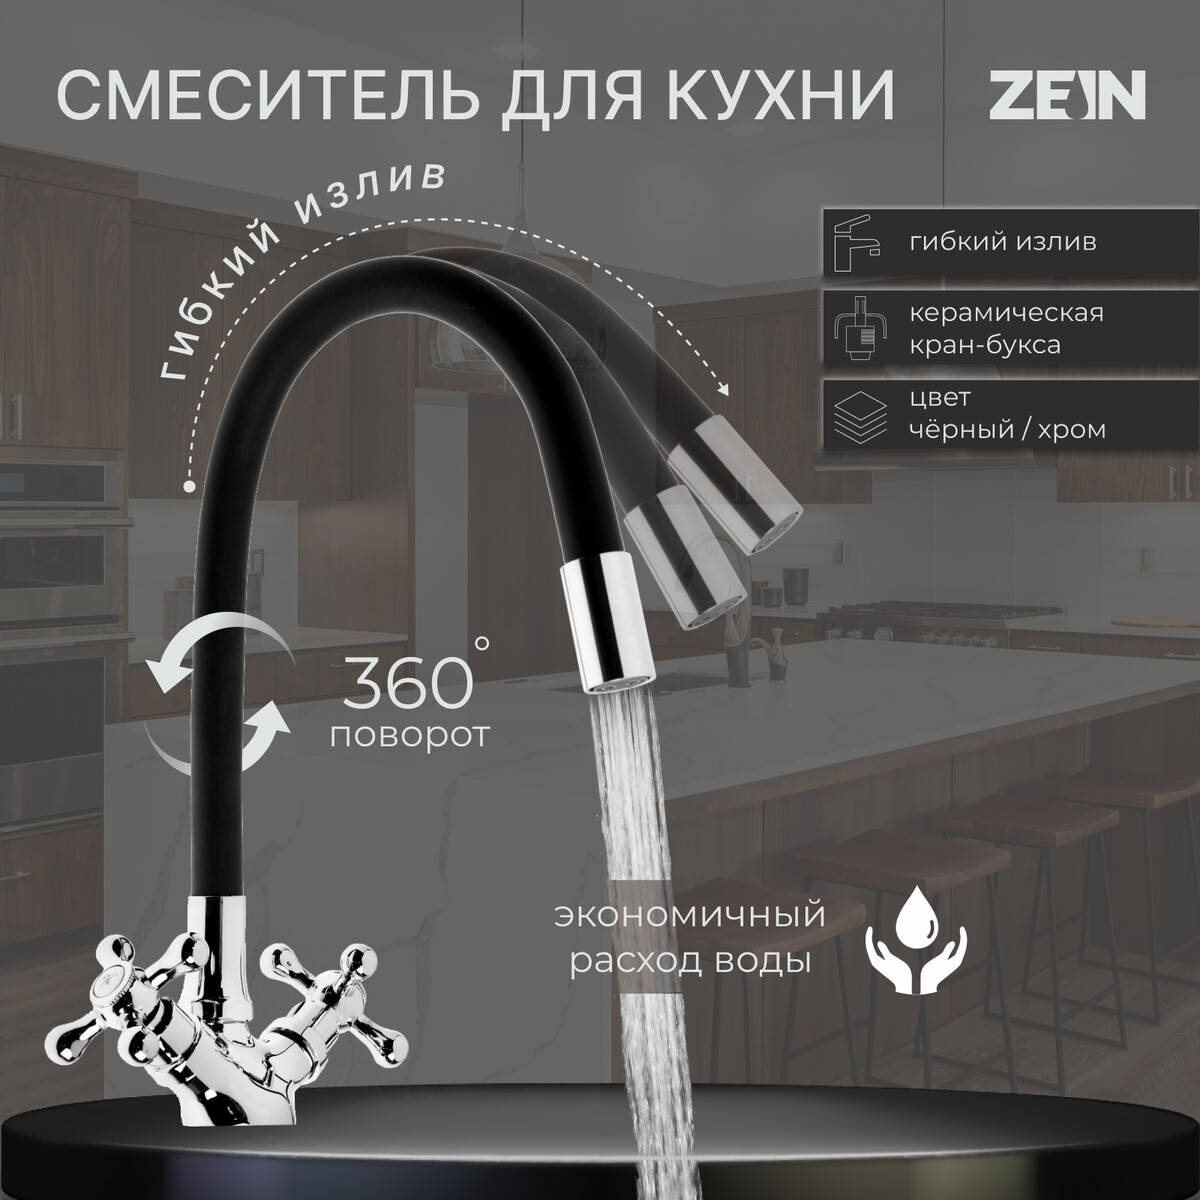 Cмеситель для кухни zein z2104, двухвентильный, силиконовый излив, черный/хром смеситель для кухни антей кристи с кран буксой для одного типа воды хром 417350 ant